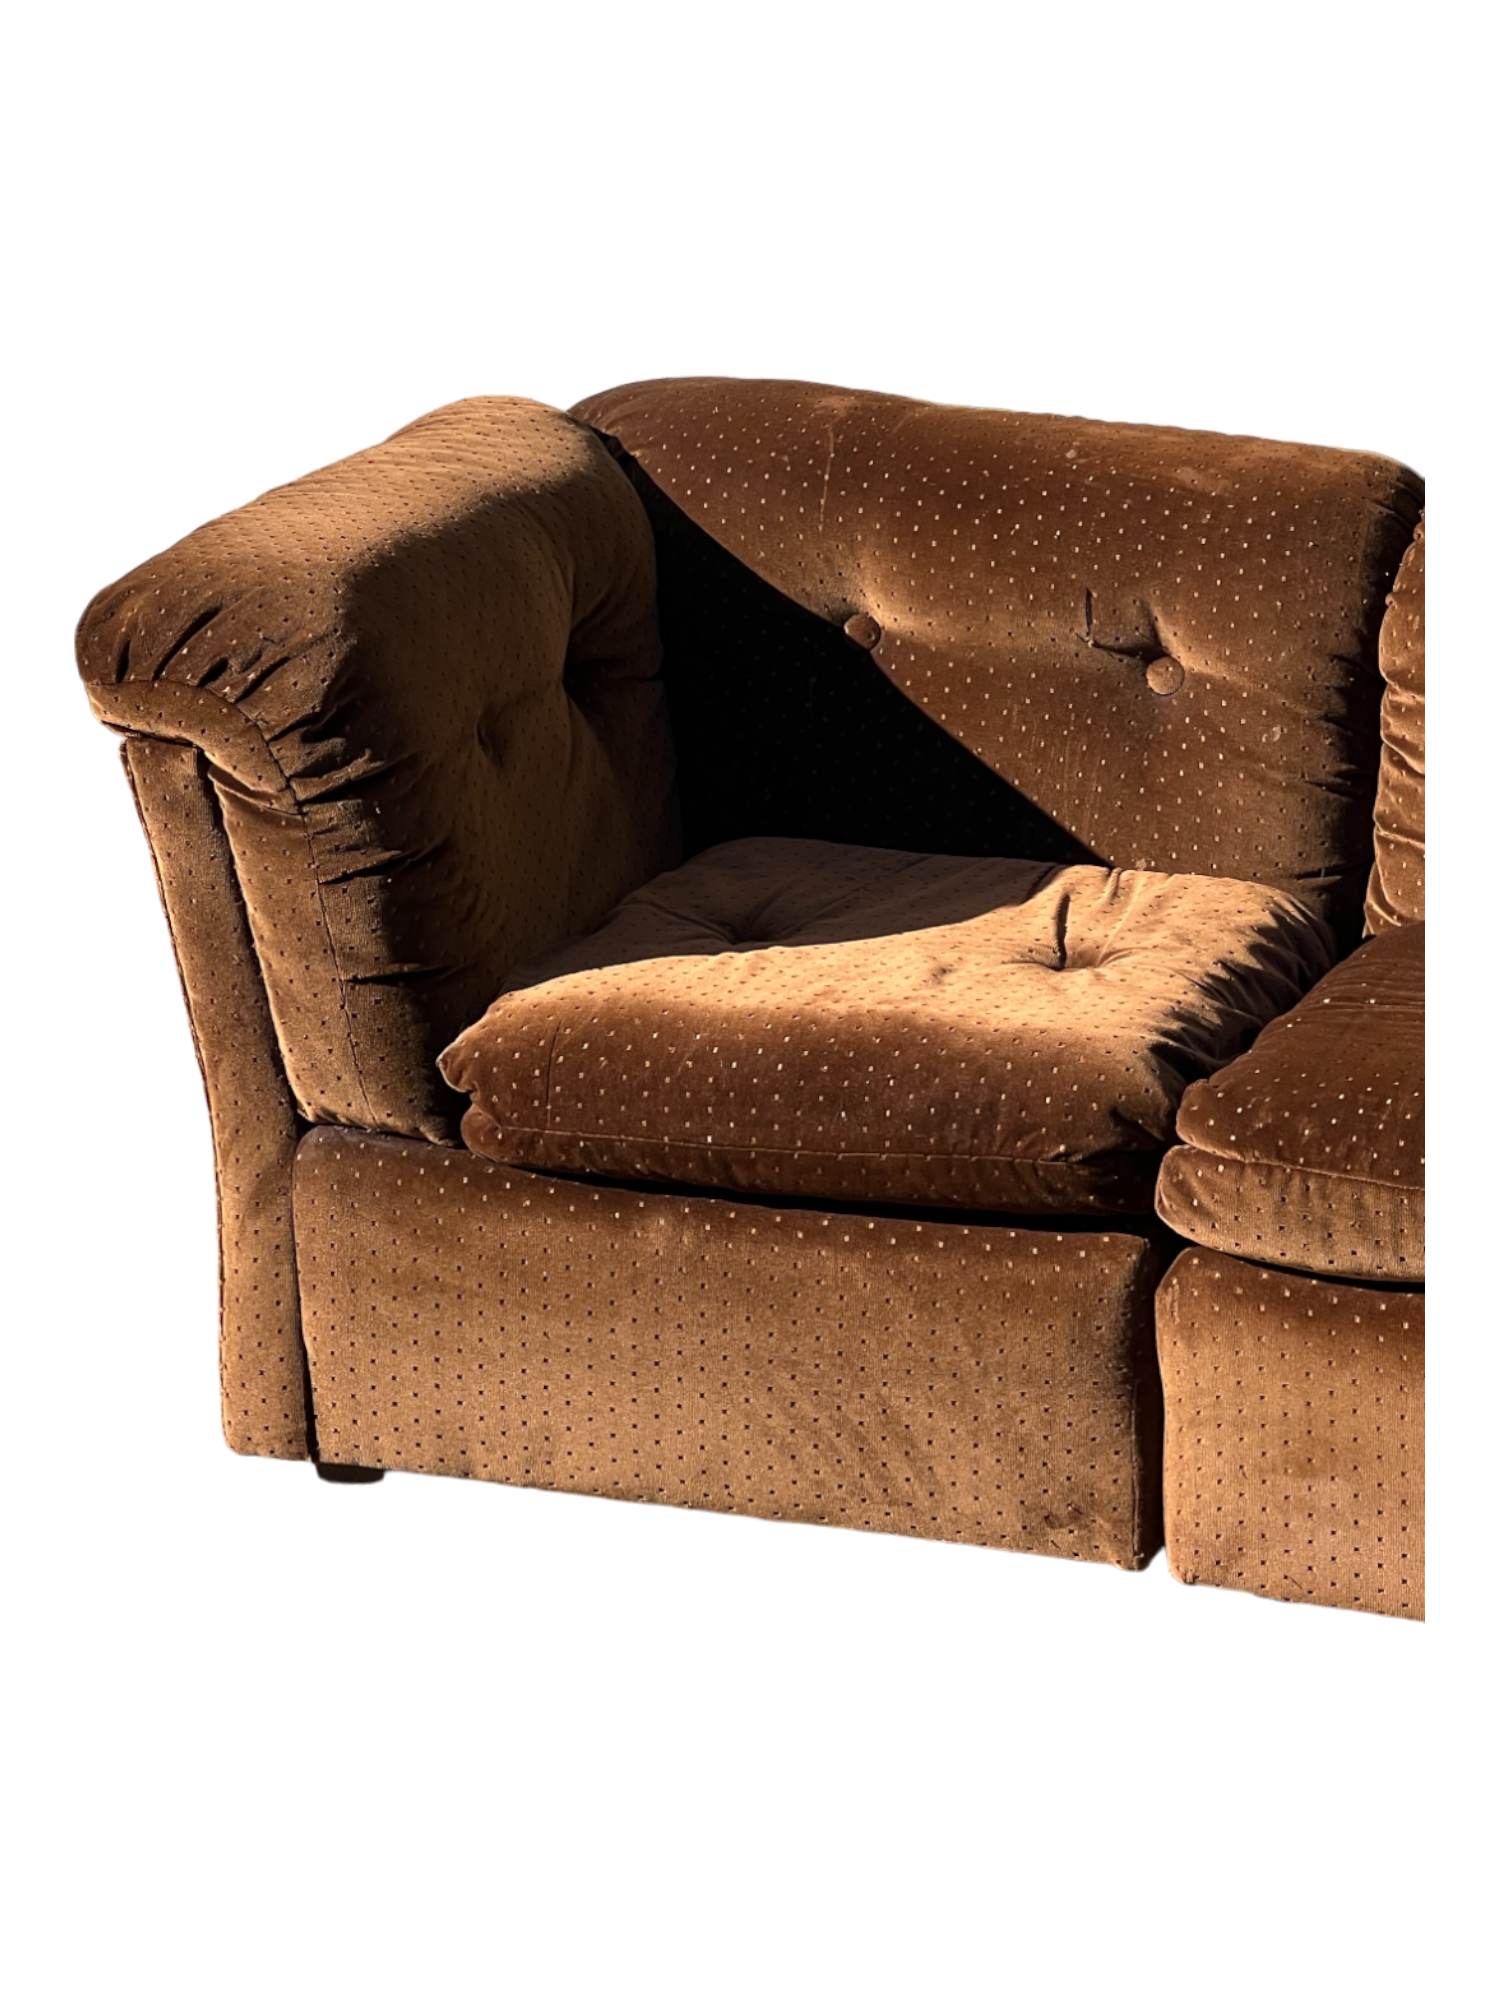 1980s Brown Velvet Modular Sofa